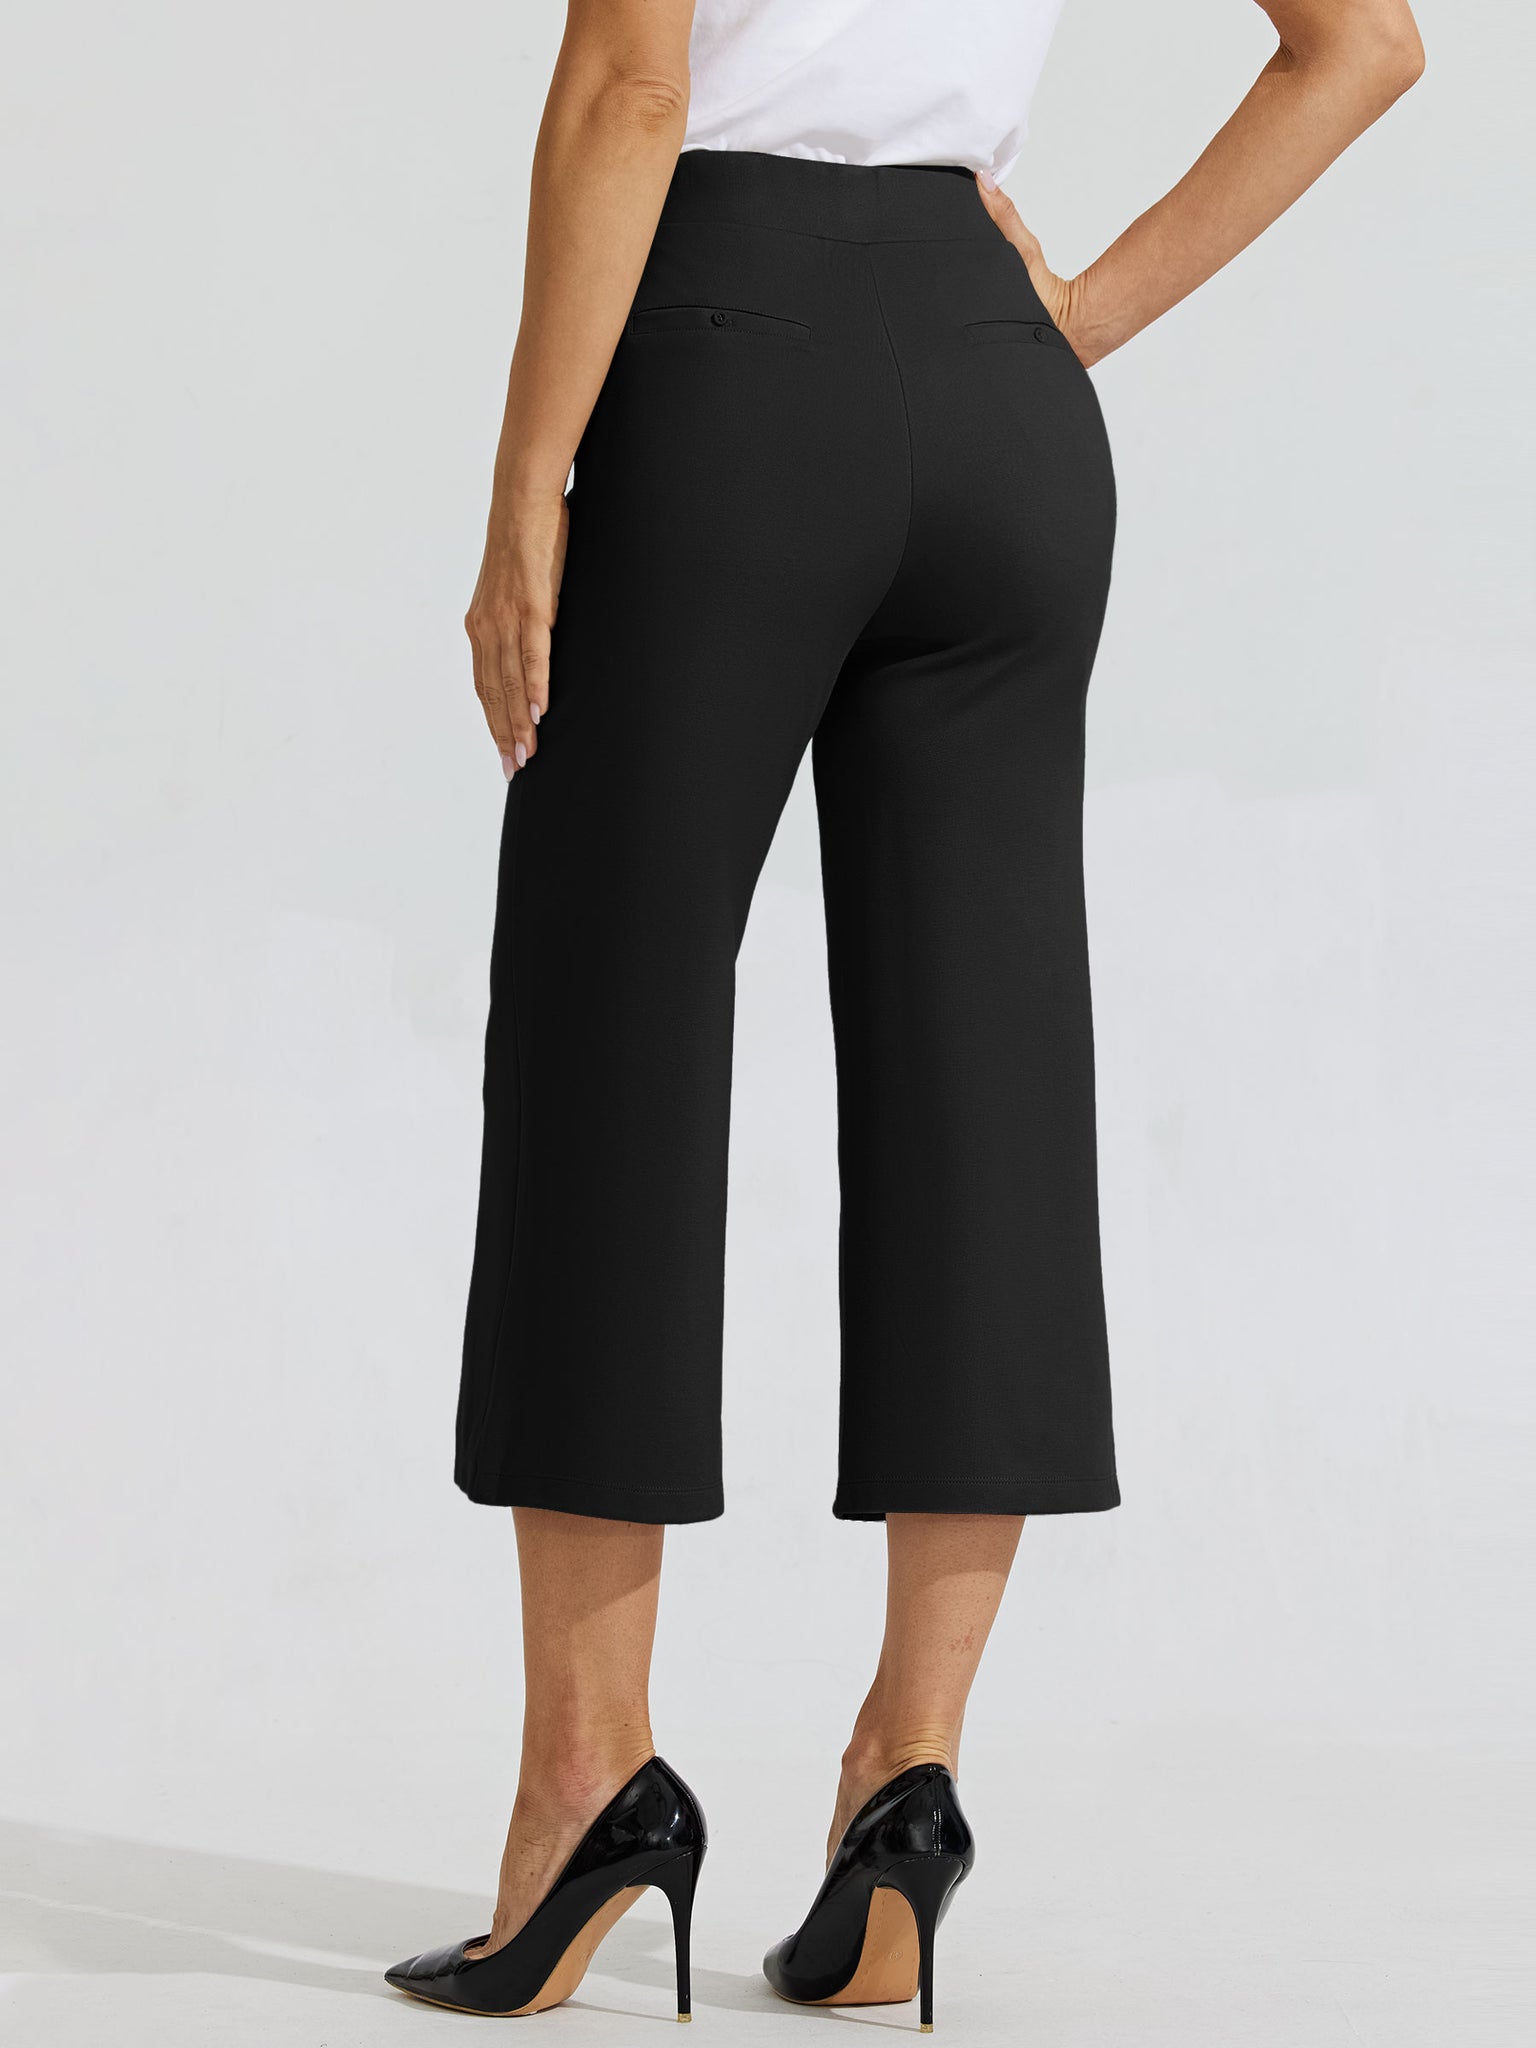 Women's Stretch Capri Wide-Leg Dress Pants_Black_model3